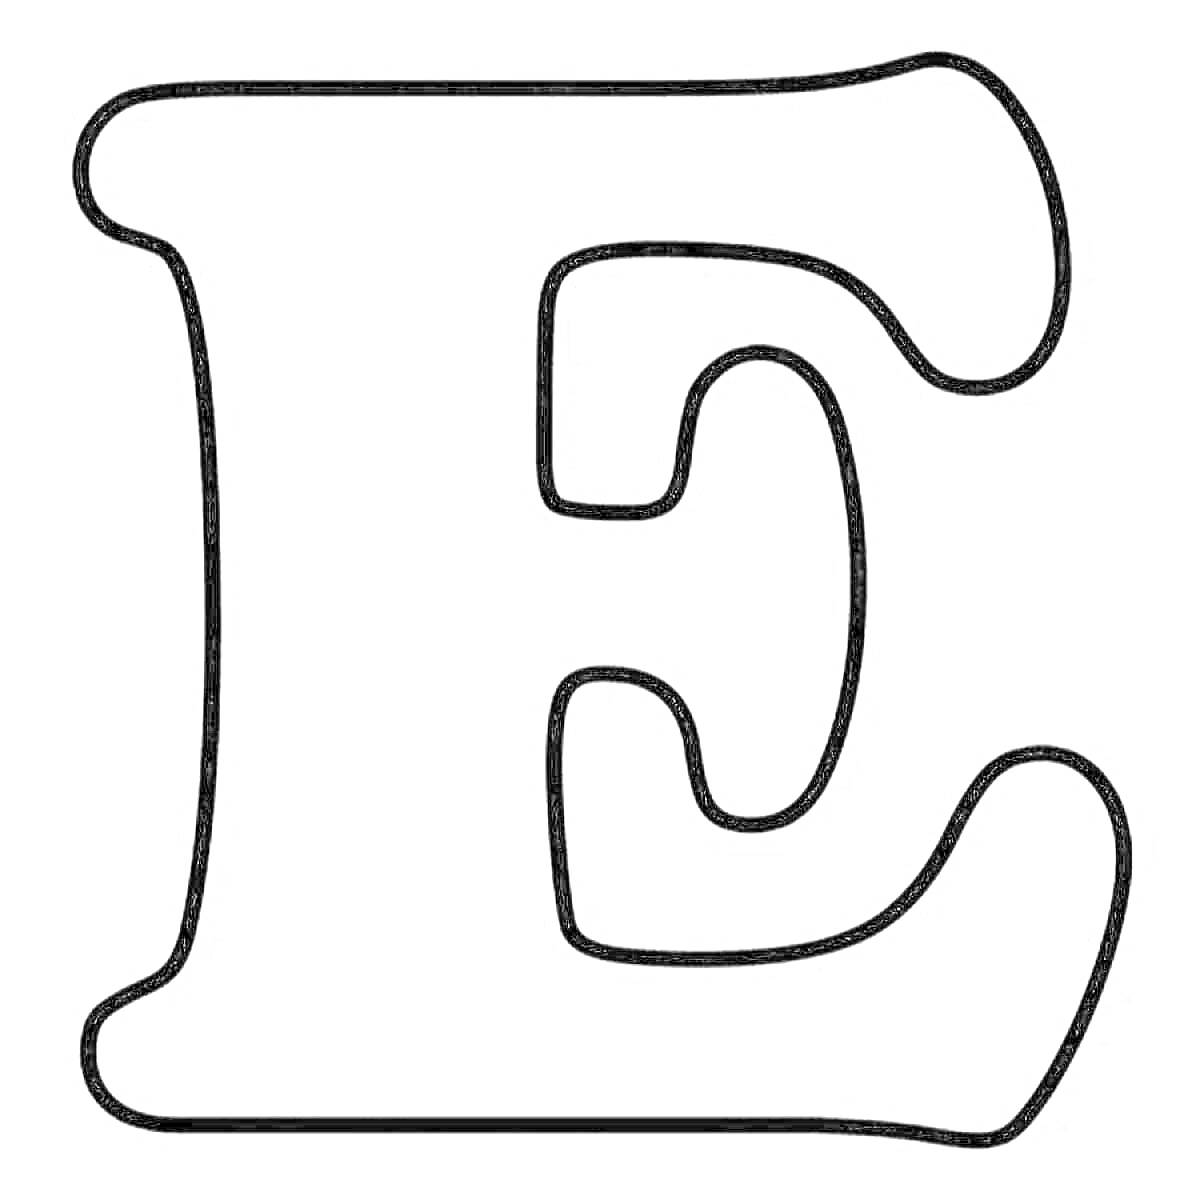 Раскраска Контурная раскраска буквы Ё крупного размера